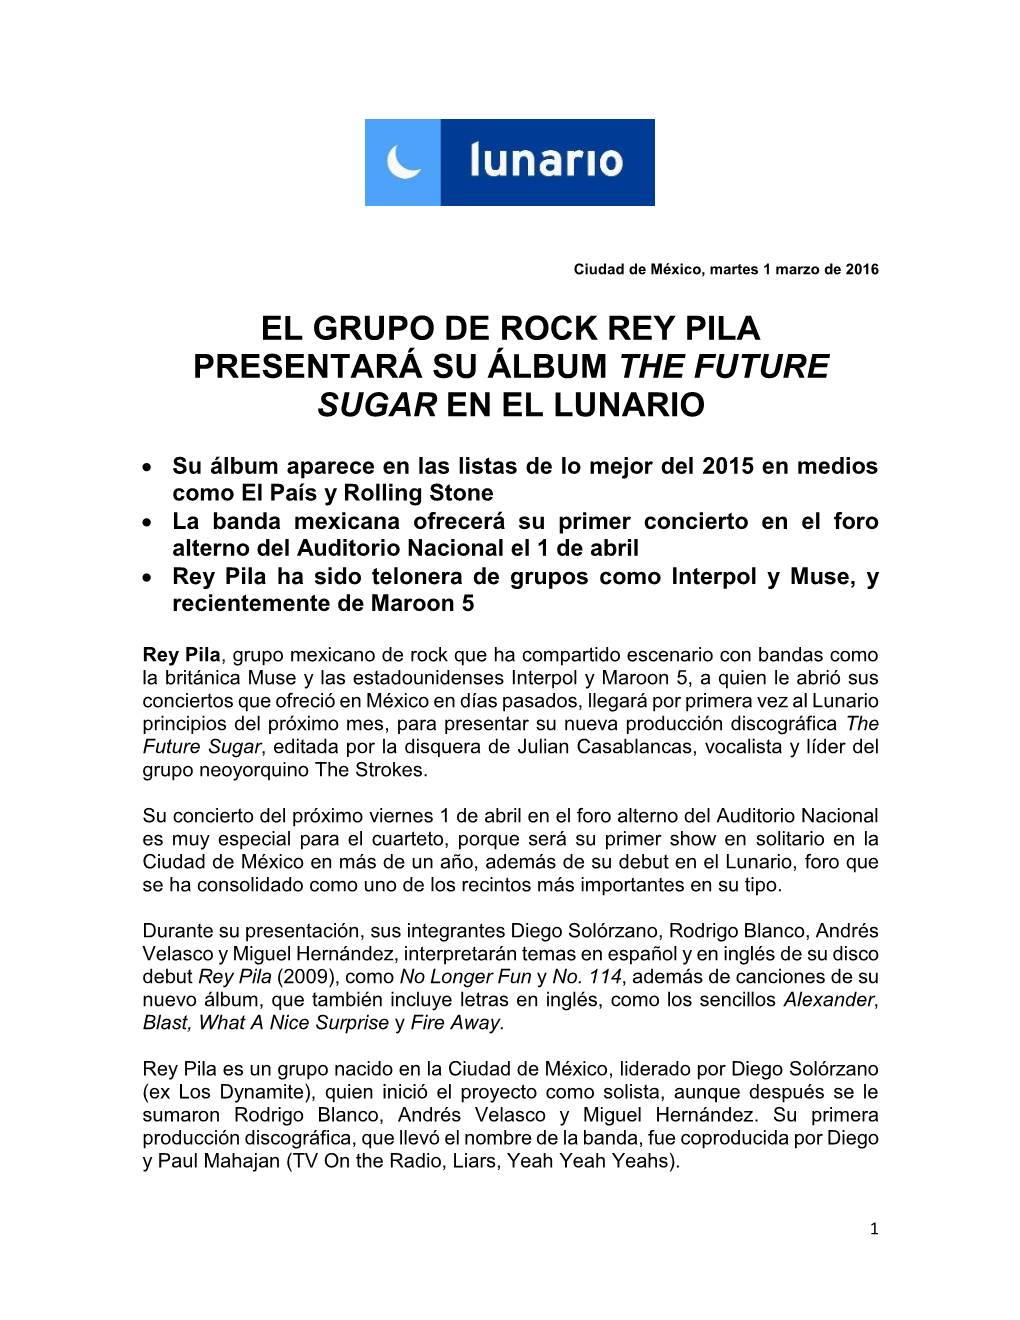 El Grupo De Rock Rey Pila Presentará Su Álbum the Future Sugar En El Lunario